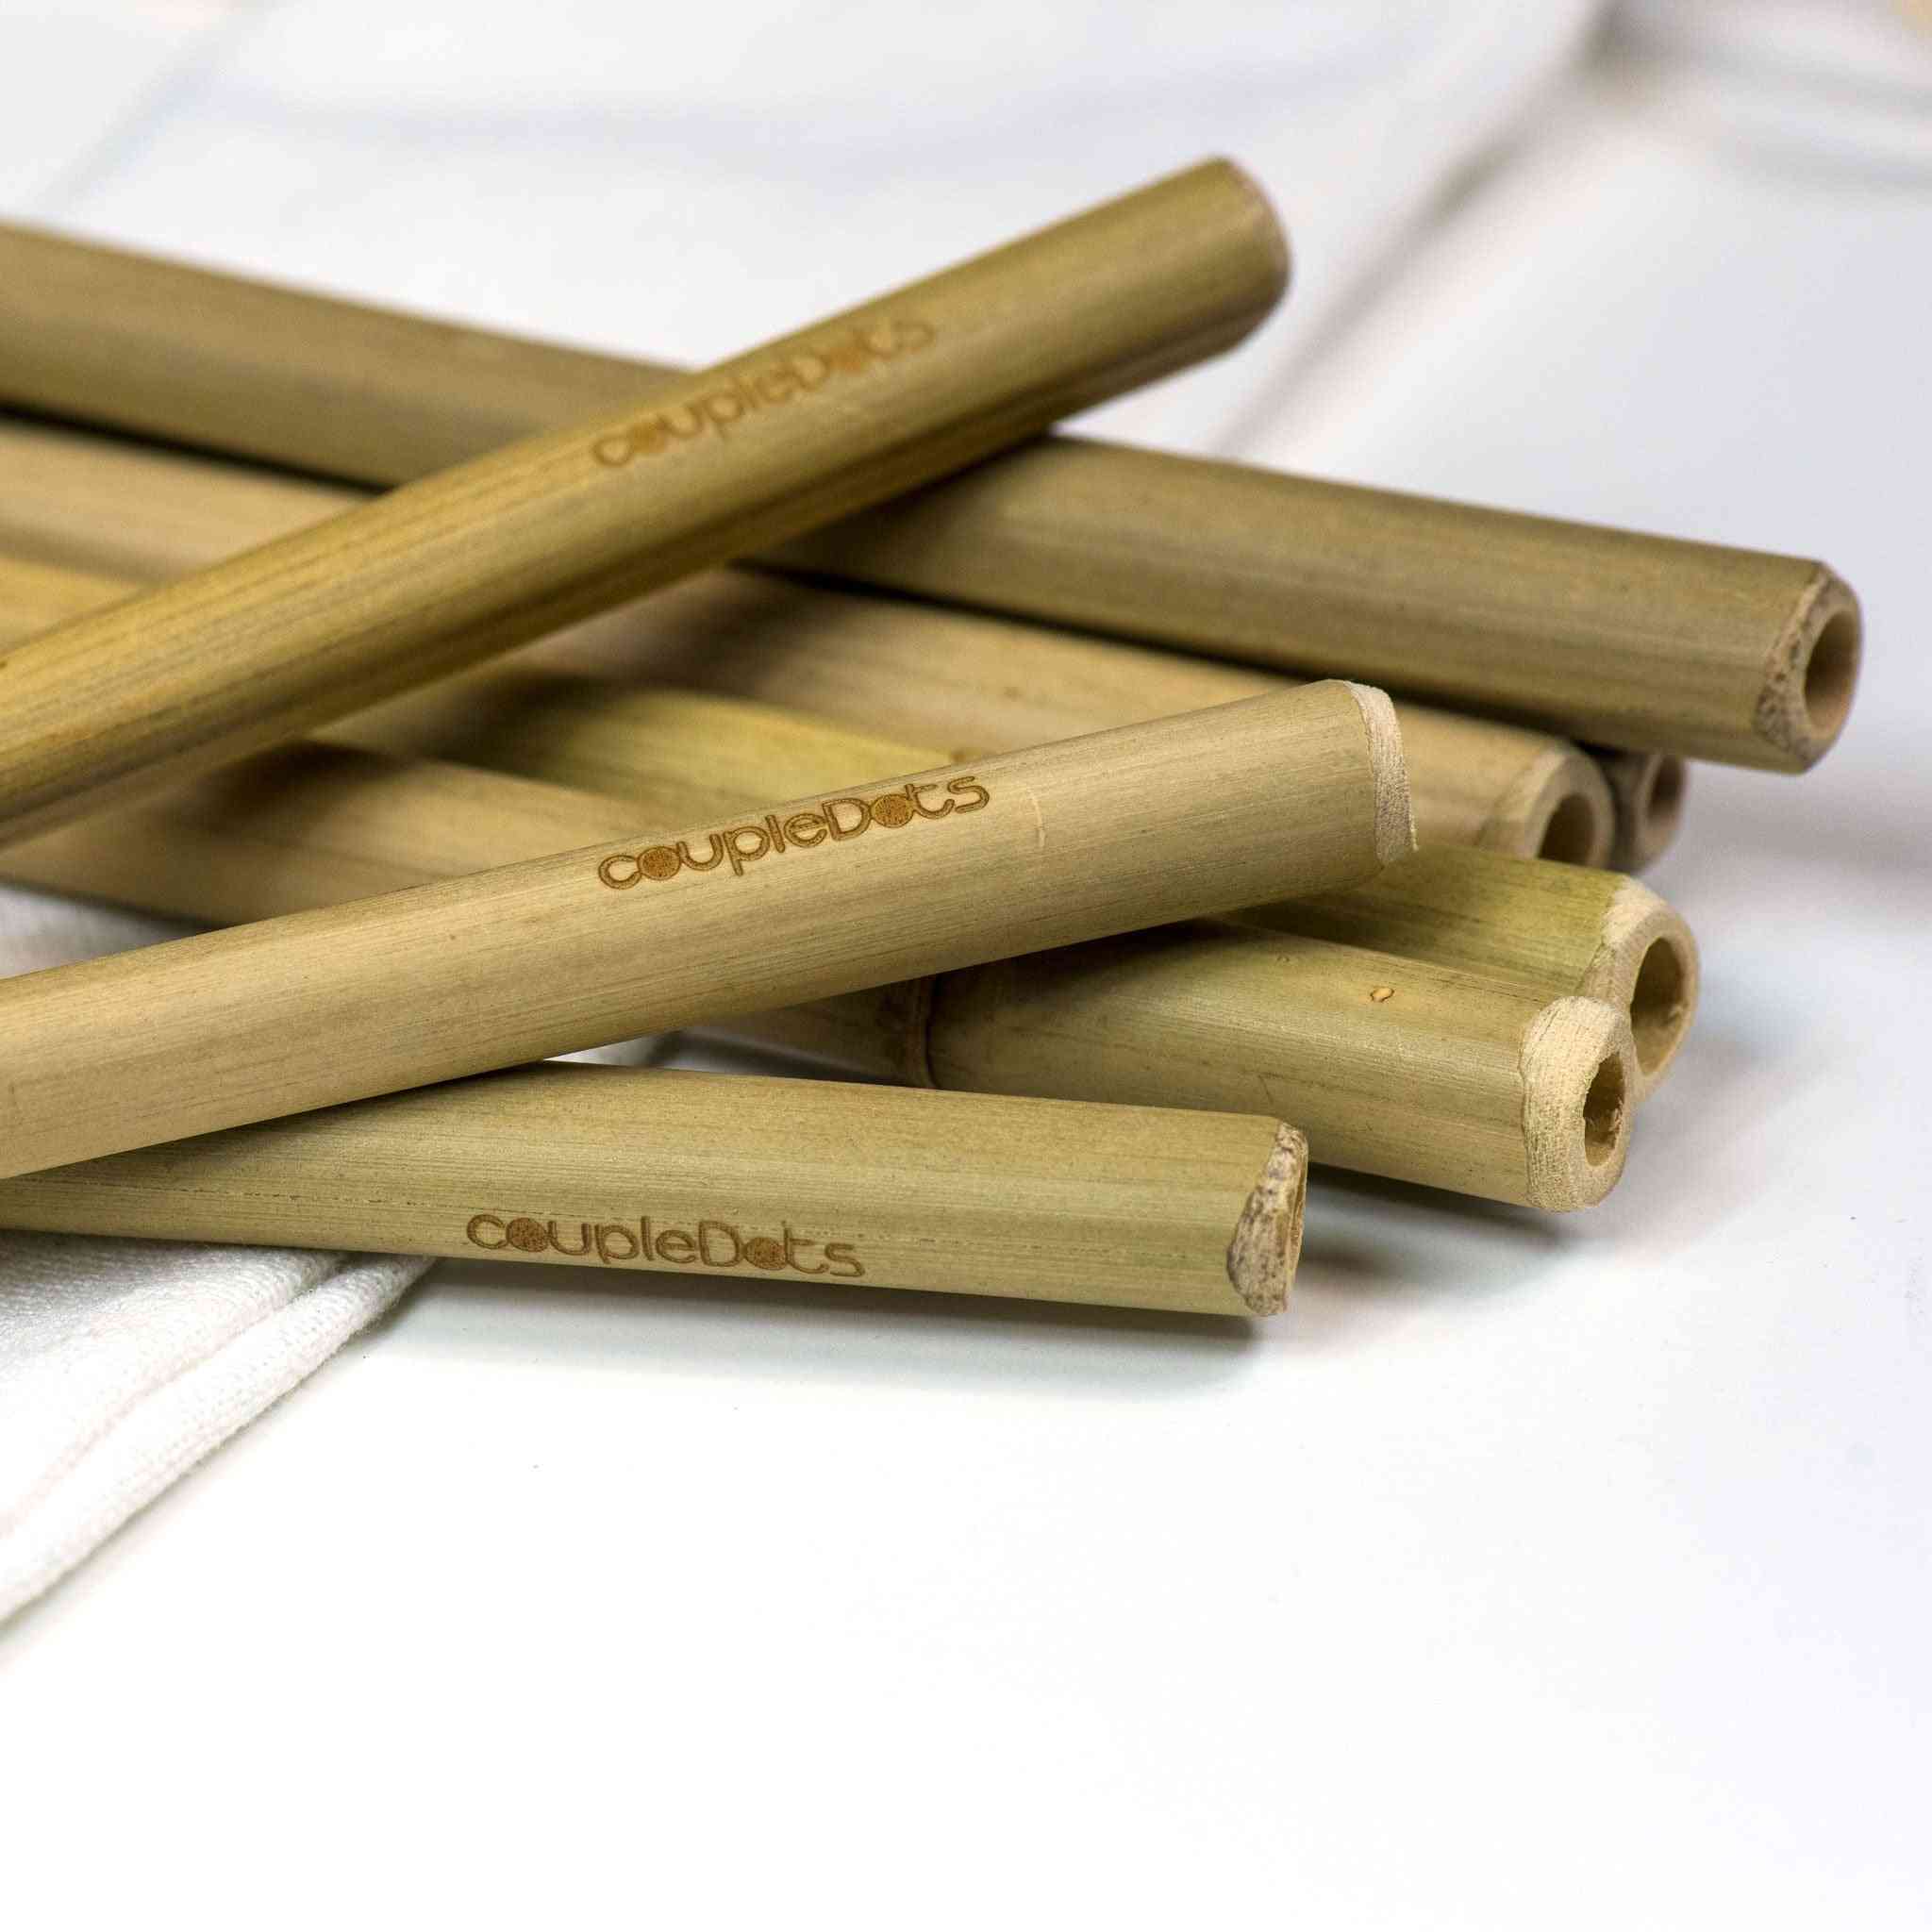 Paie de băut biodegradabile din bambus